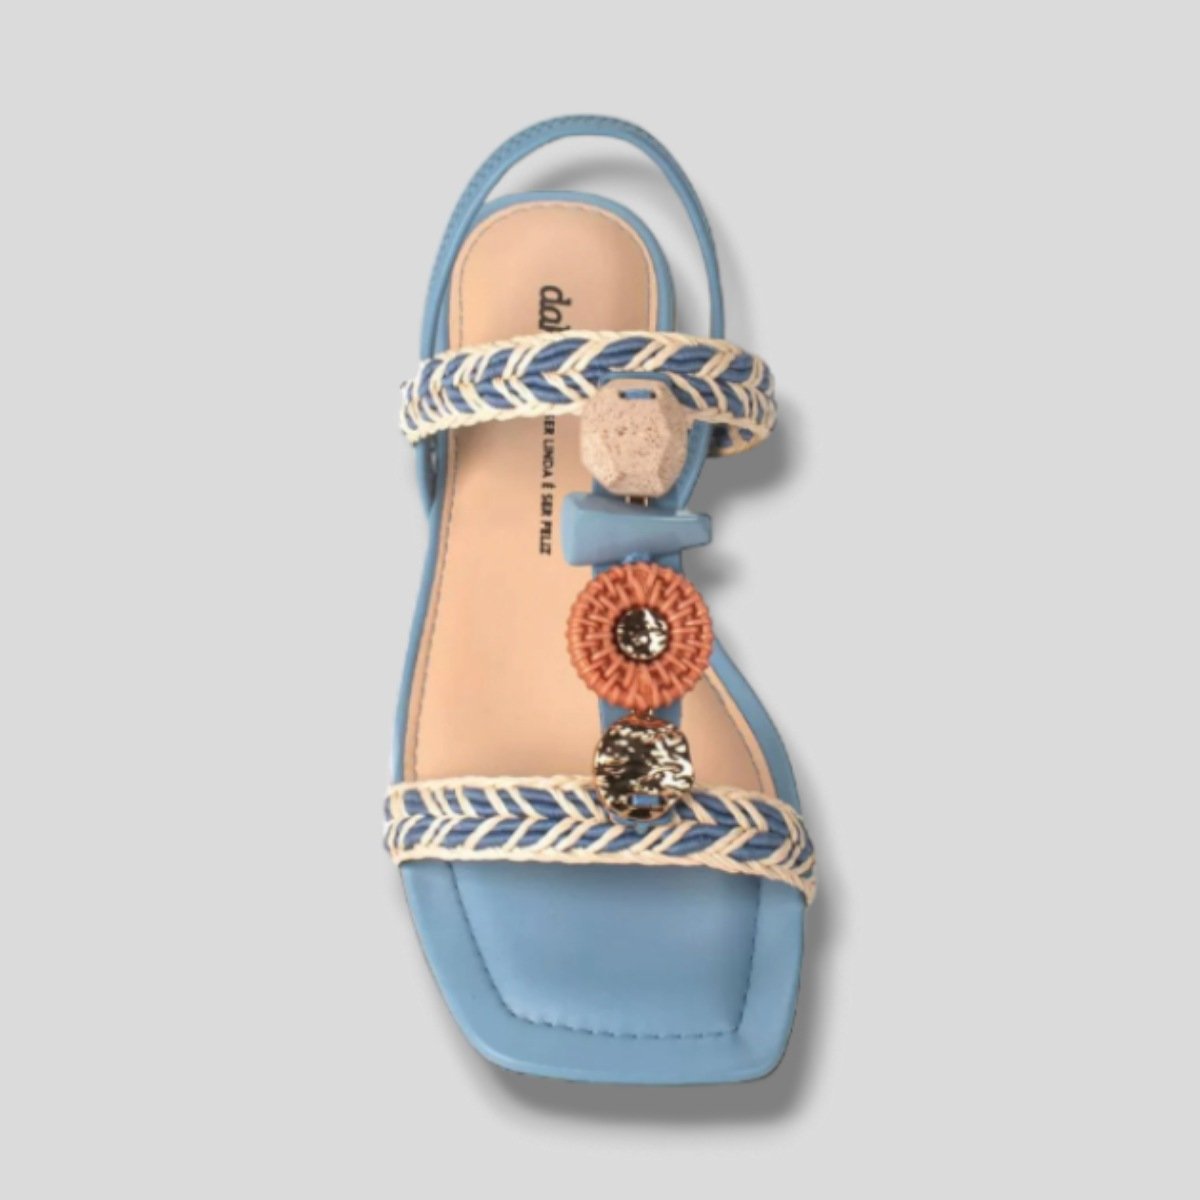 Sandália Dakota Rasteira 6791 - Feminino Azul 3